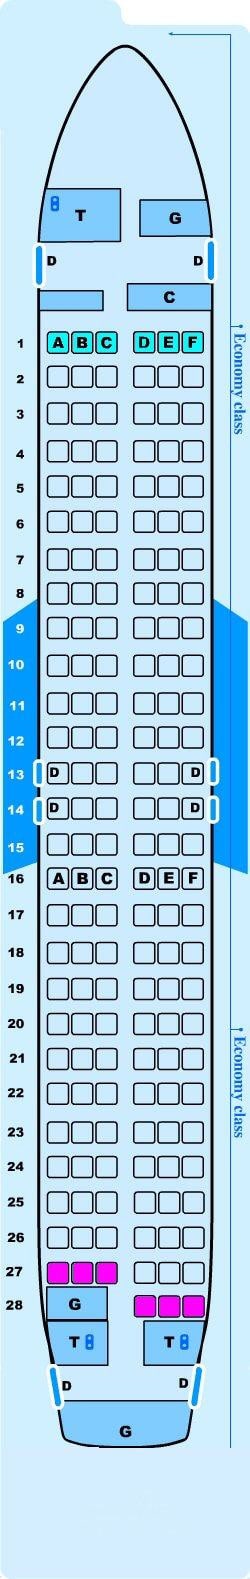 Ryanair A320 Seating Plan